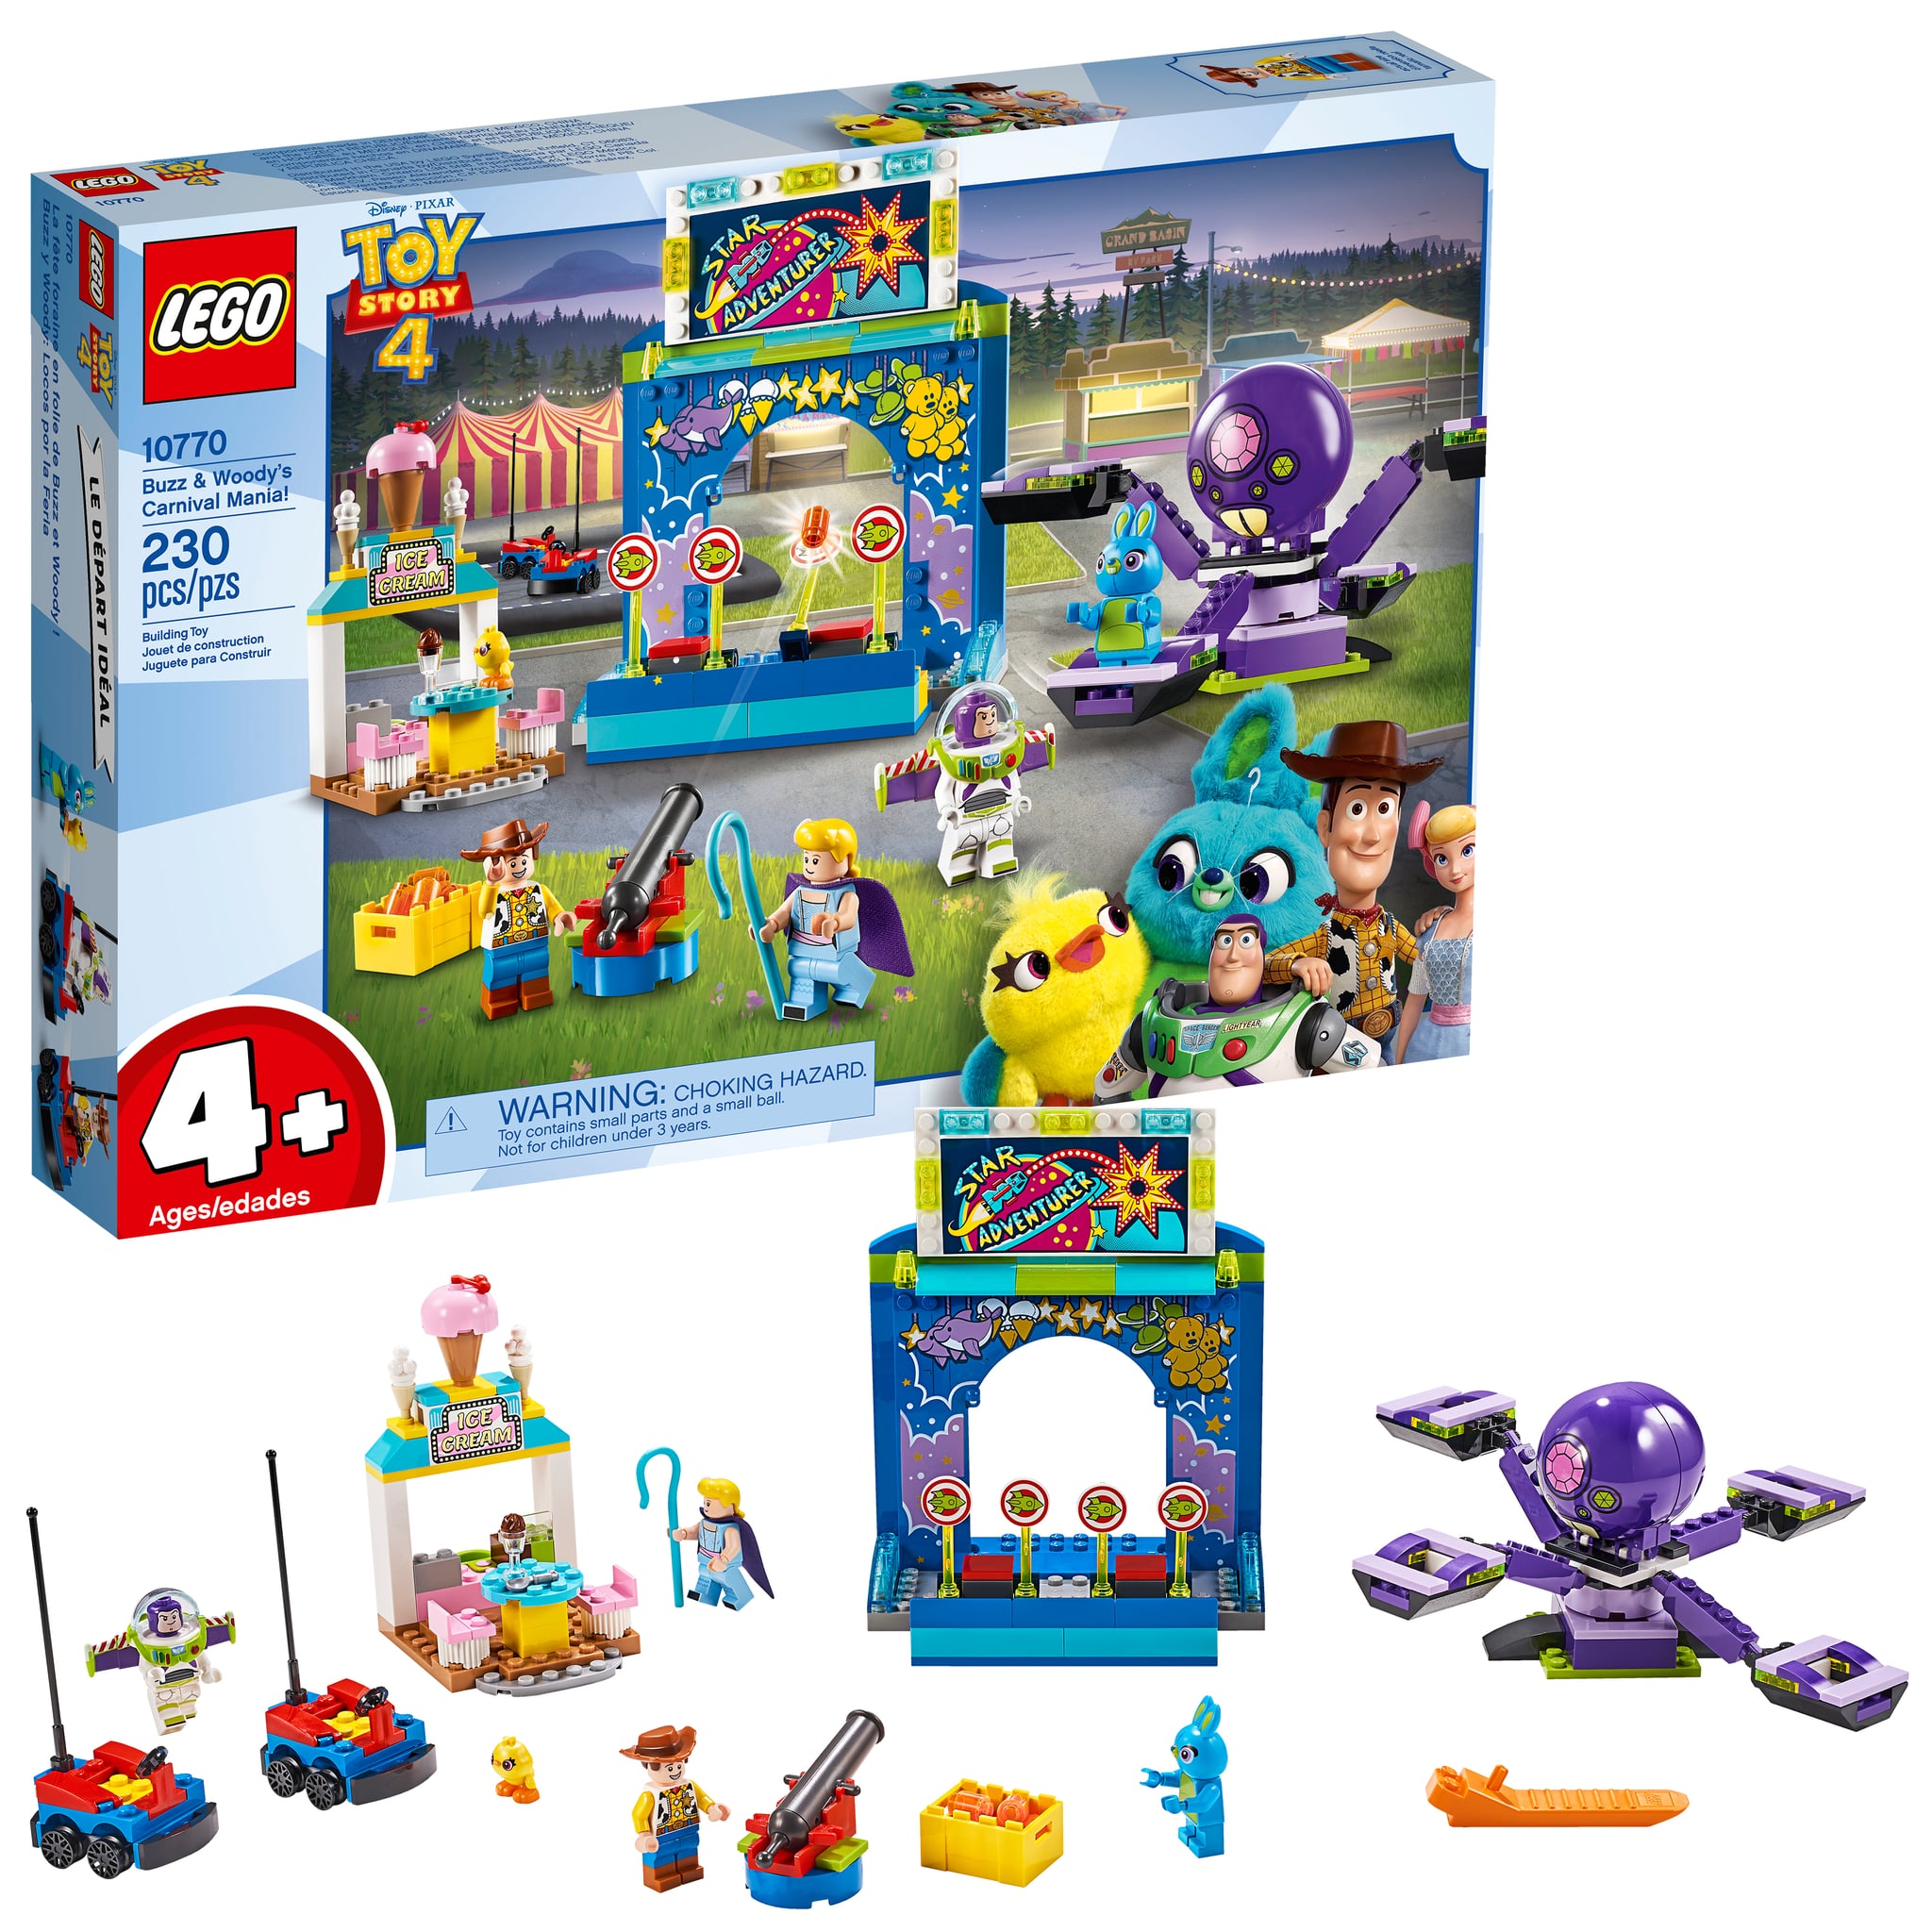 Toy Lego Sets | POPSUGAR Family